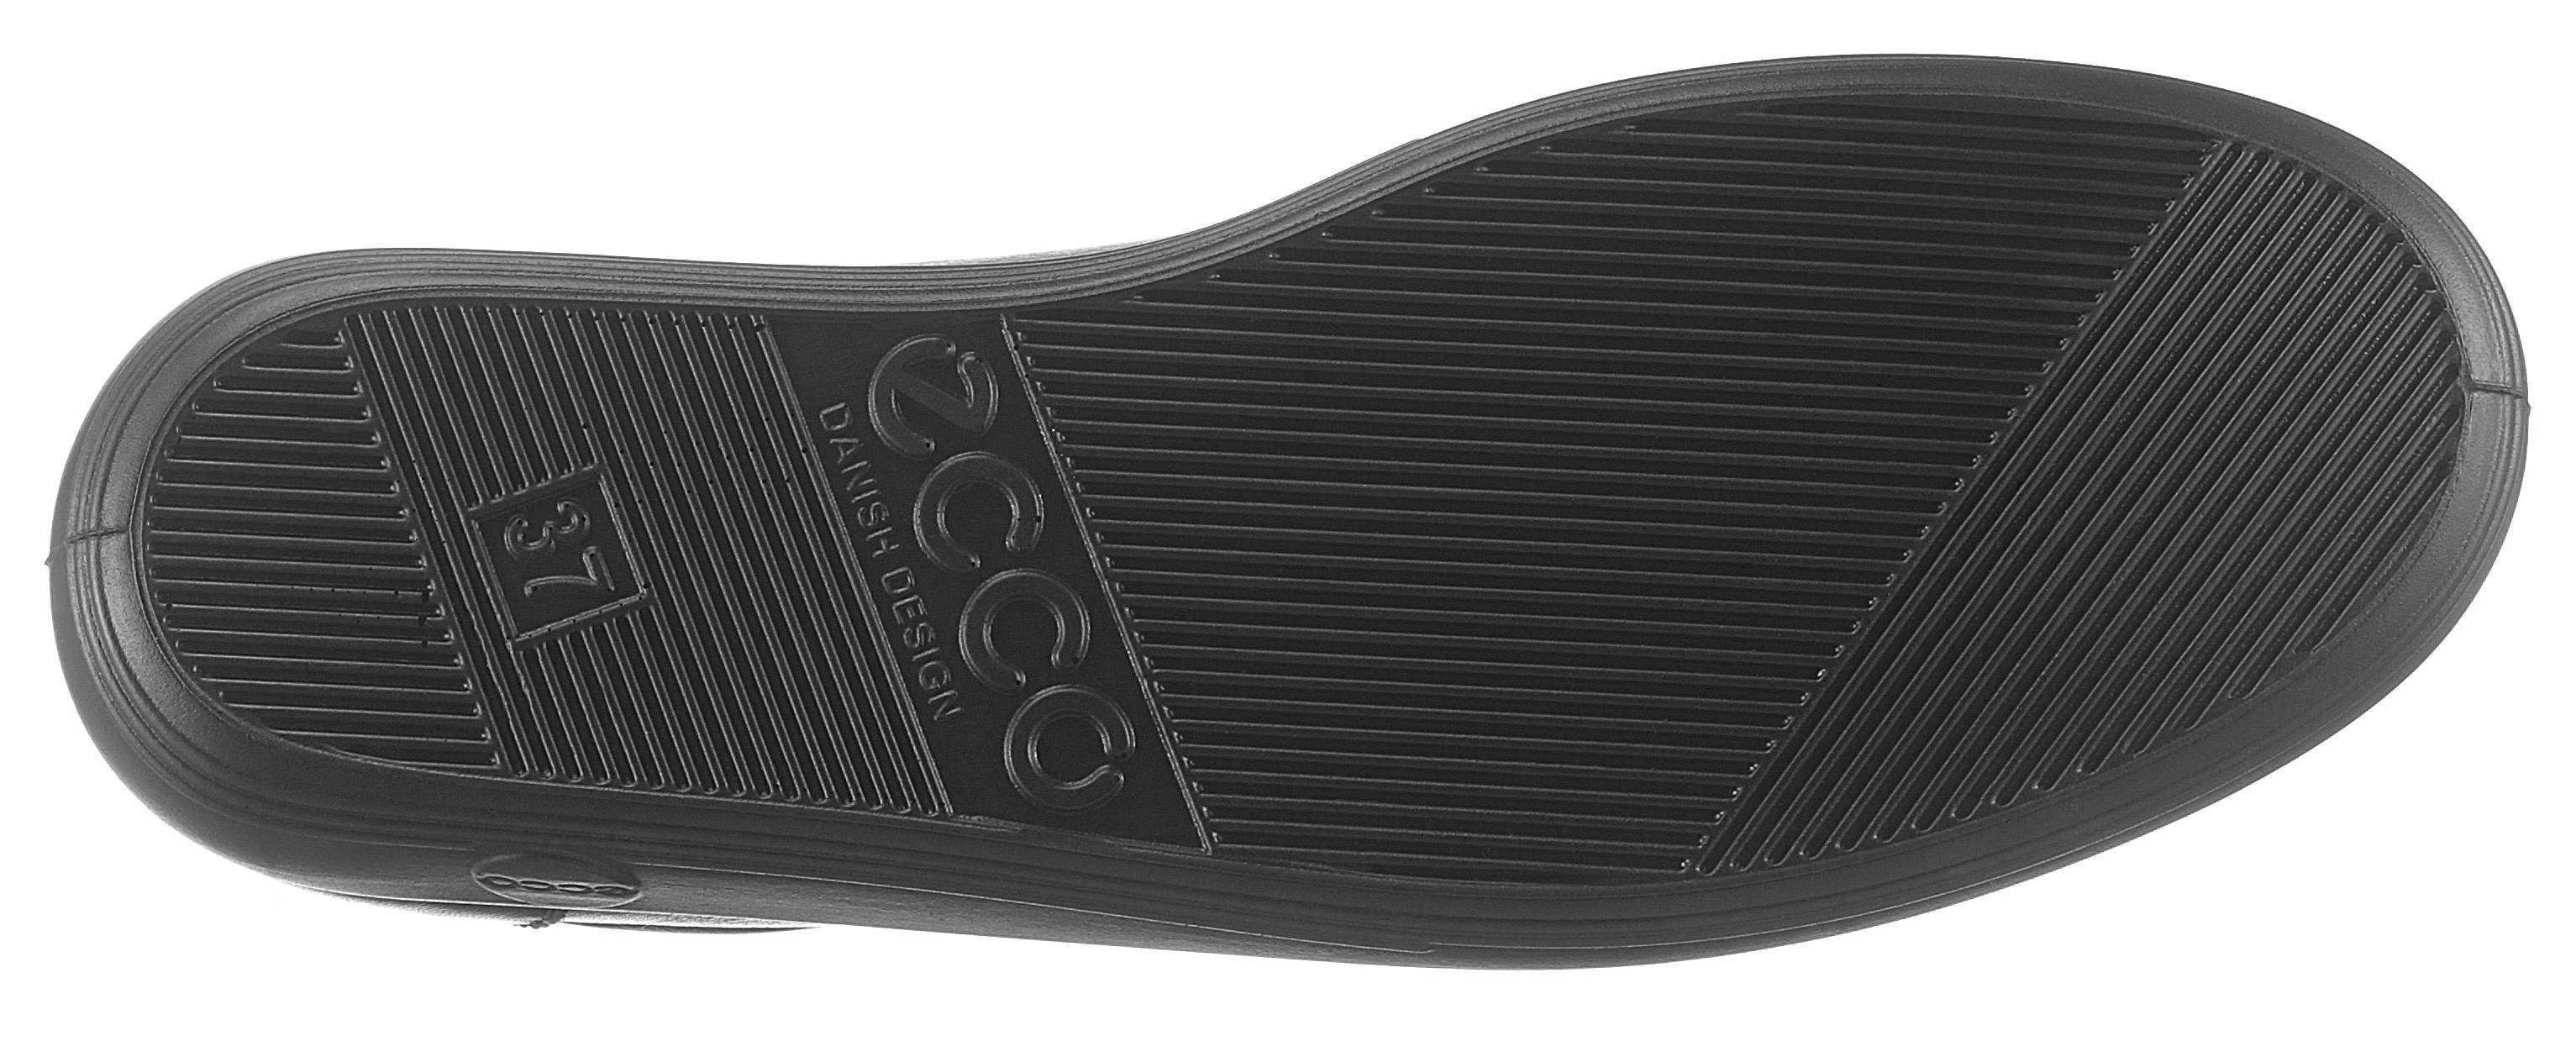 Schnürschuh dezenter schwarz Logo Ecco Soft mit Ecco 2.0 Prägung